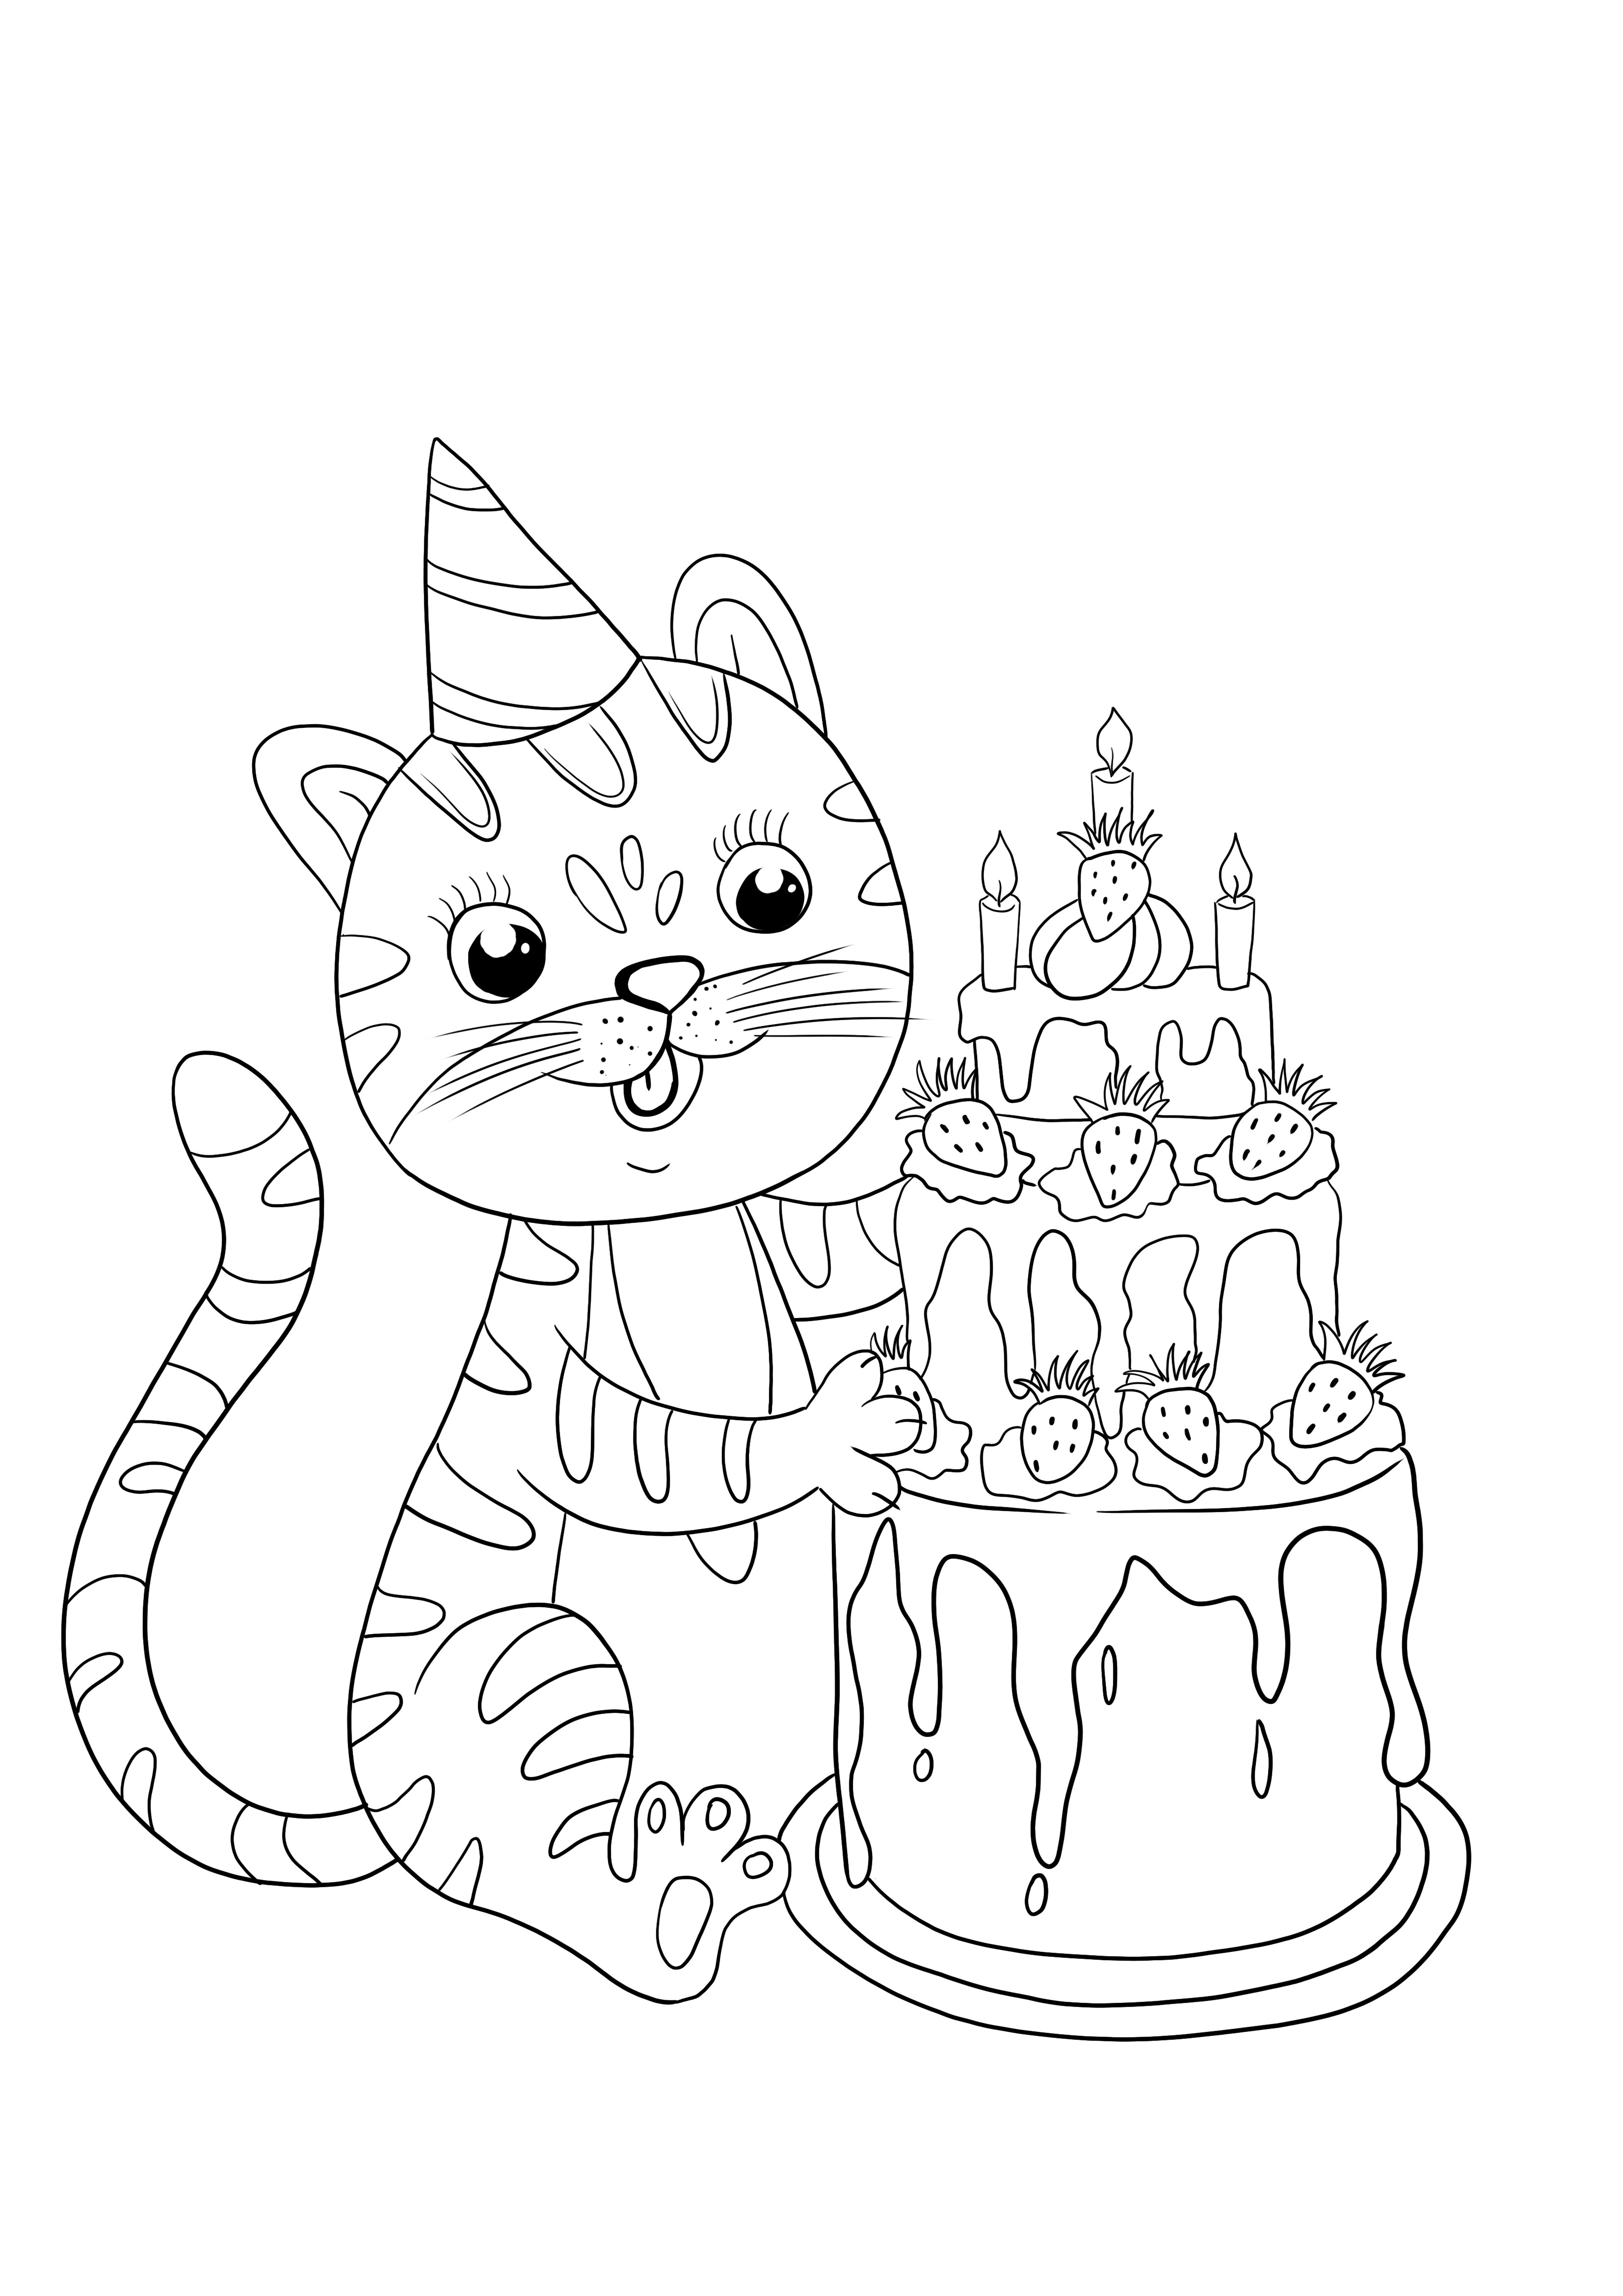 Kartka urodzinowa dla kota dla dzieci do pokolorowania i wydrukowania